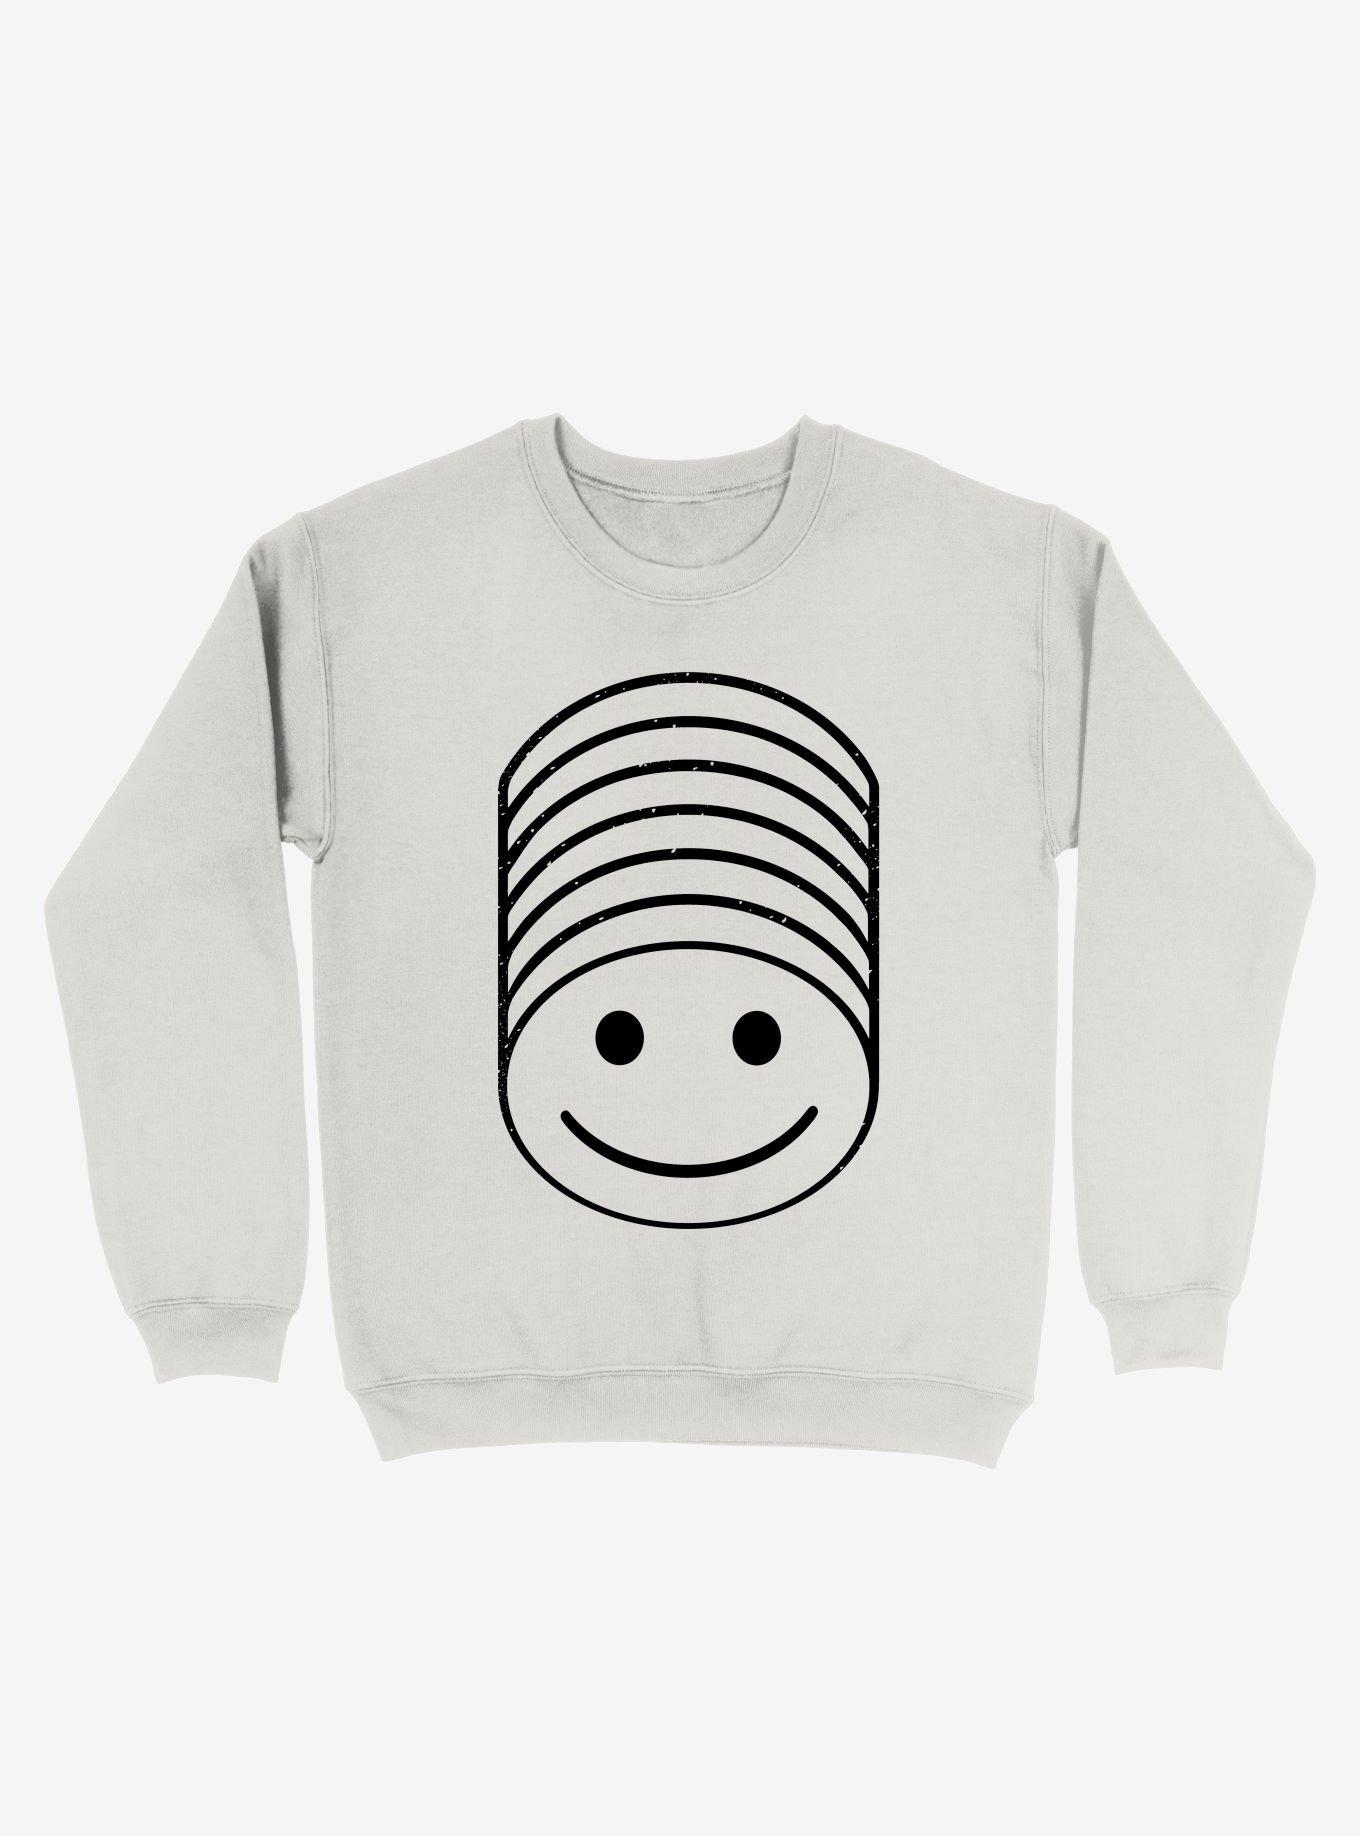 Smile Stack Sweatshirt, WHITE, hi-res